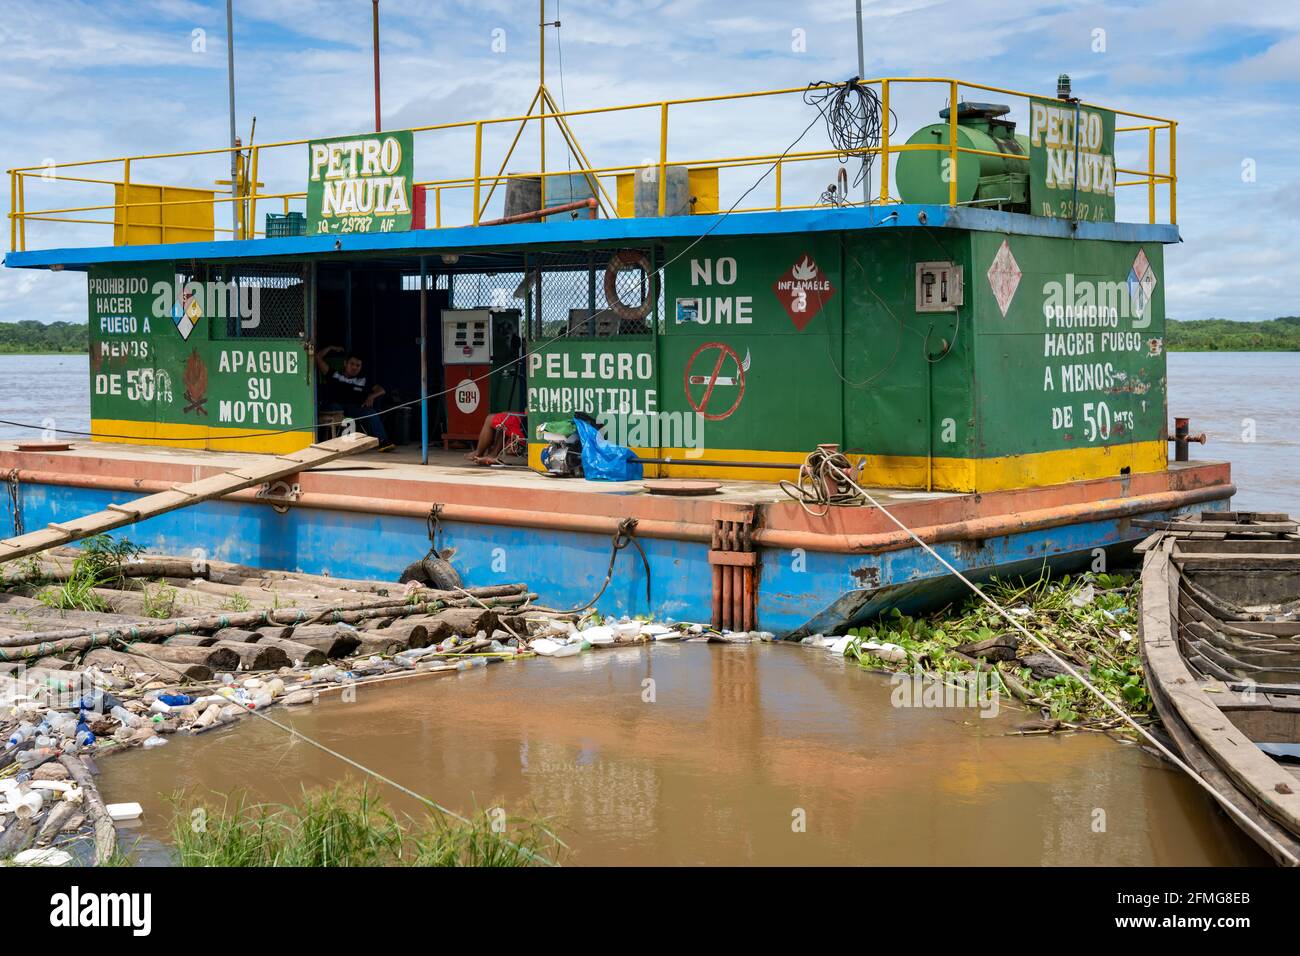 Ein Bootskahn versorgt die Boote in Nauta, Peru, mit Gas Stockfoto